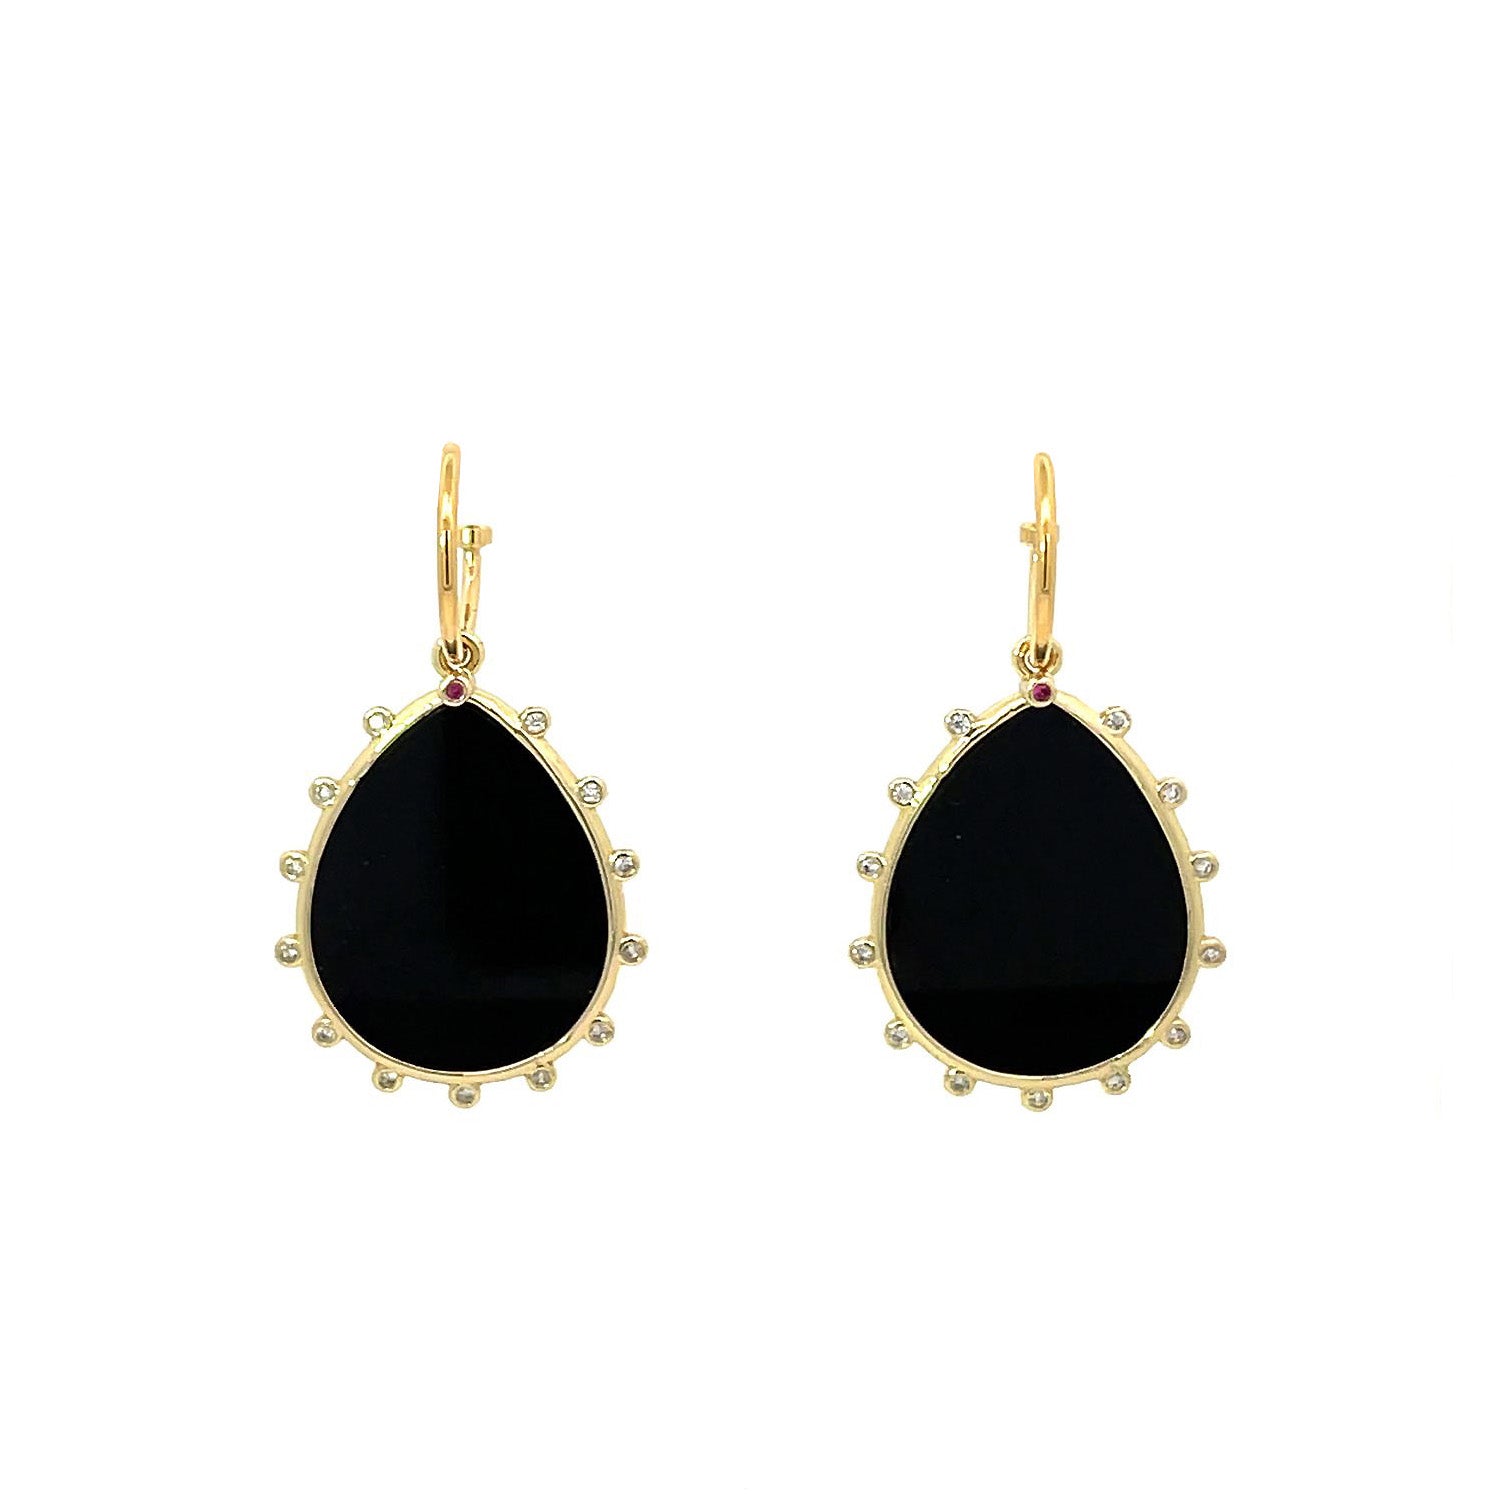 Luxe Black Obsidian Drop Earrings by Gosia Orlowska